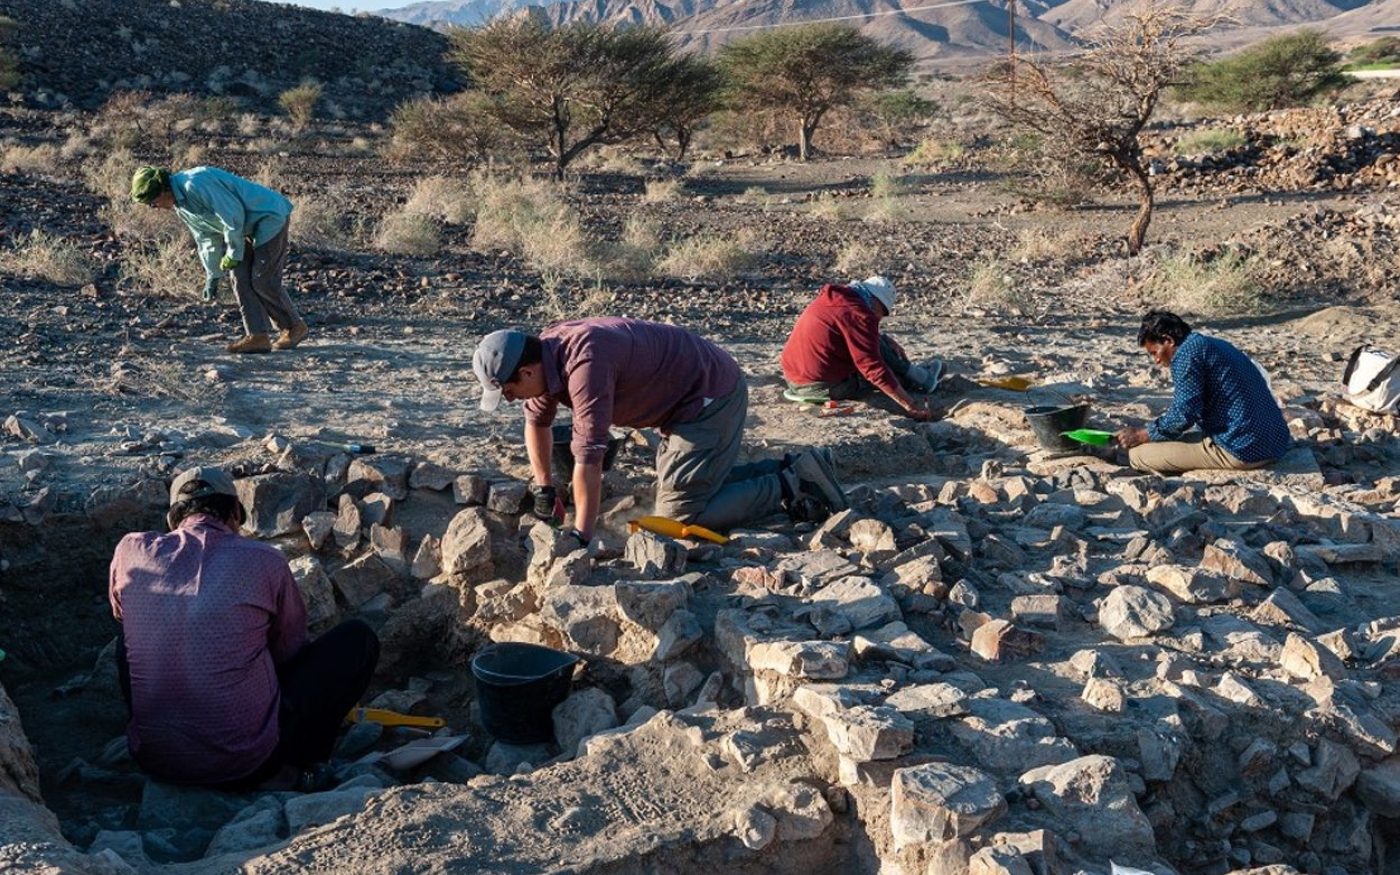 Les preuves suggèrent que les résidents de l’ancien Oman interagissaient avec des populations jusqu’en Mésopotamie (Université de Varsovie)